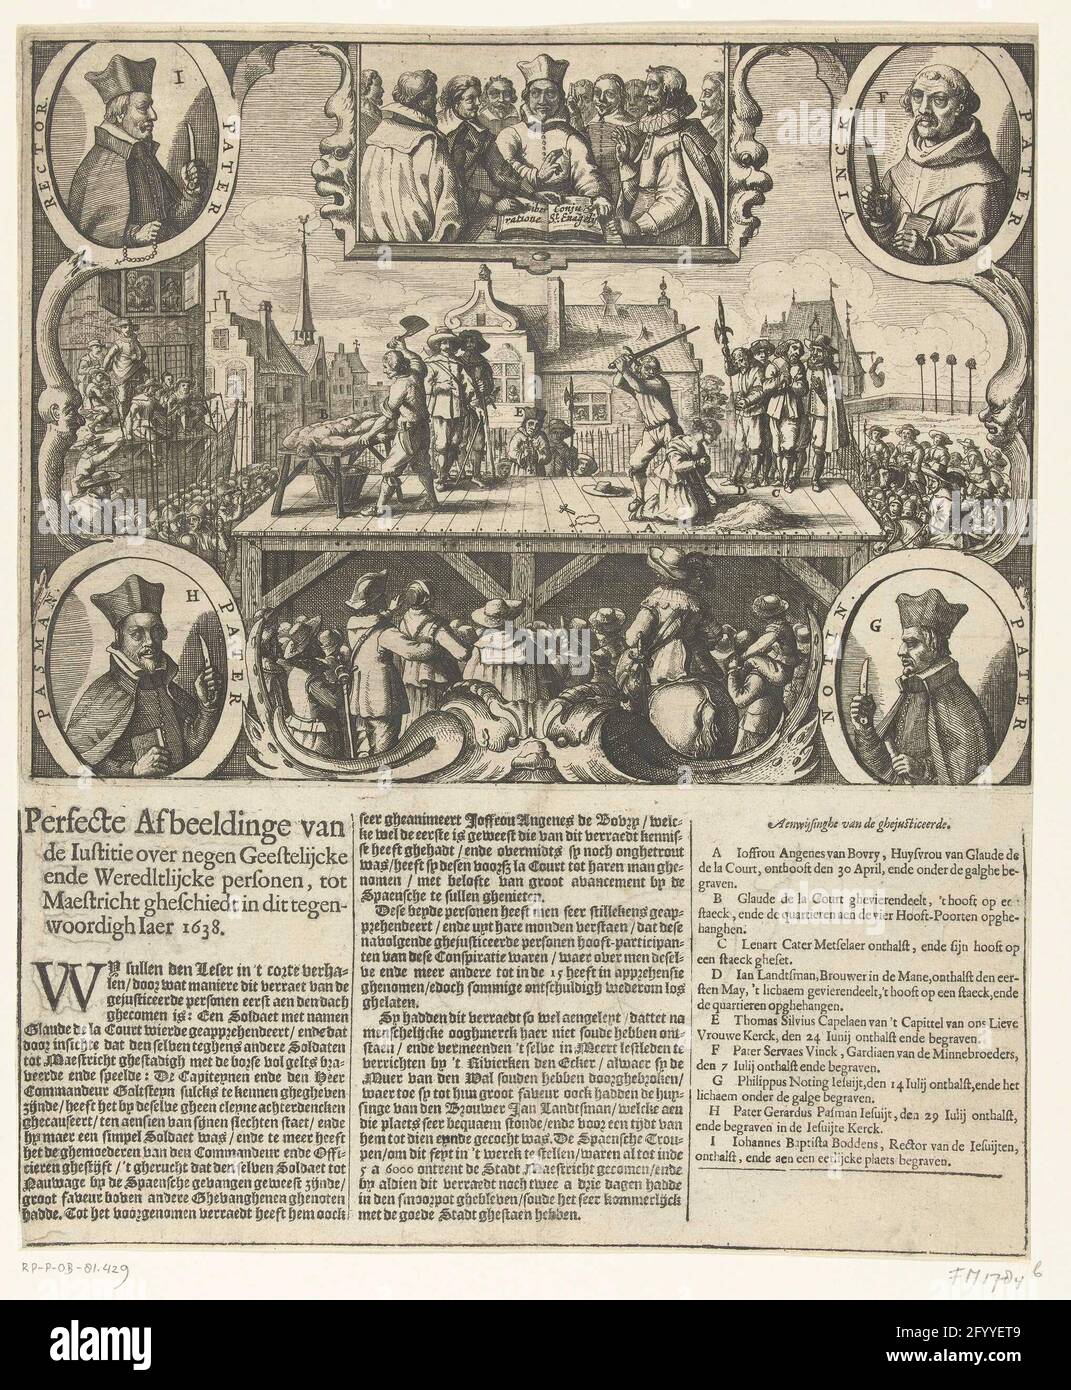 Hinrichtung von neun Personen, die Maastricht an die Spanier verraten schwor, 1638; perfektes Bild der Gerechtigkeit über neun Geister, an Maestrechts Ghegeschts in diesem opponneigh Jaer 1638. Hinrichtungen in Maastricht von neun Personen, die Maastricht an die Spanier zu verraten geschworen haben, 1638. Claude de la Court gilt auf einem Gerüst als seine Frau Angenes von Bovry, die am 30. April 1638 enthauptet wurde. In den Ecken Porträts der vier römischen Geistlichen, die an der Verschwörung beteiligt waren und im Juli enthauptet wurden. Oben legen die neun Verschwörer der Bibel einen Eid ab. Unter dem Druck ist ein Text von 3 Spalten mit einem legen Stockfoto